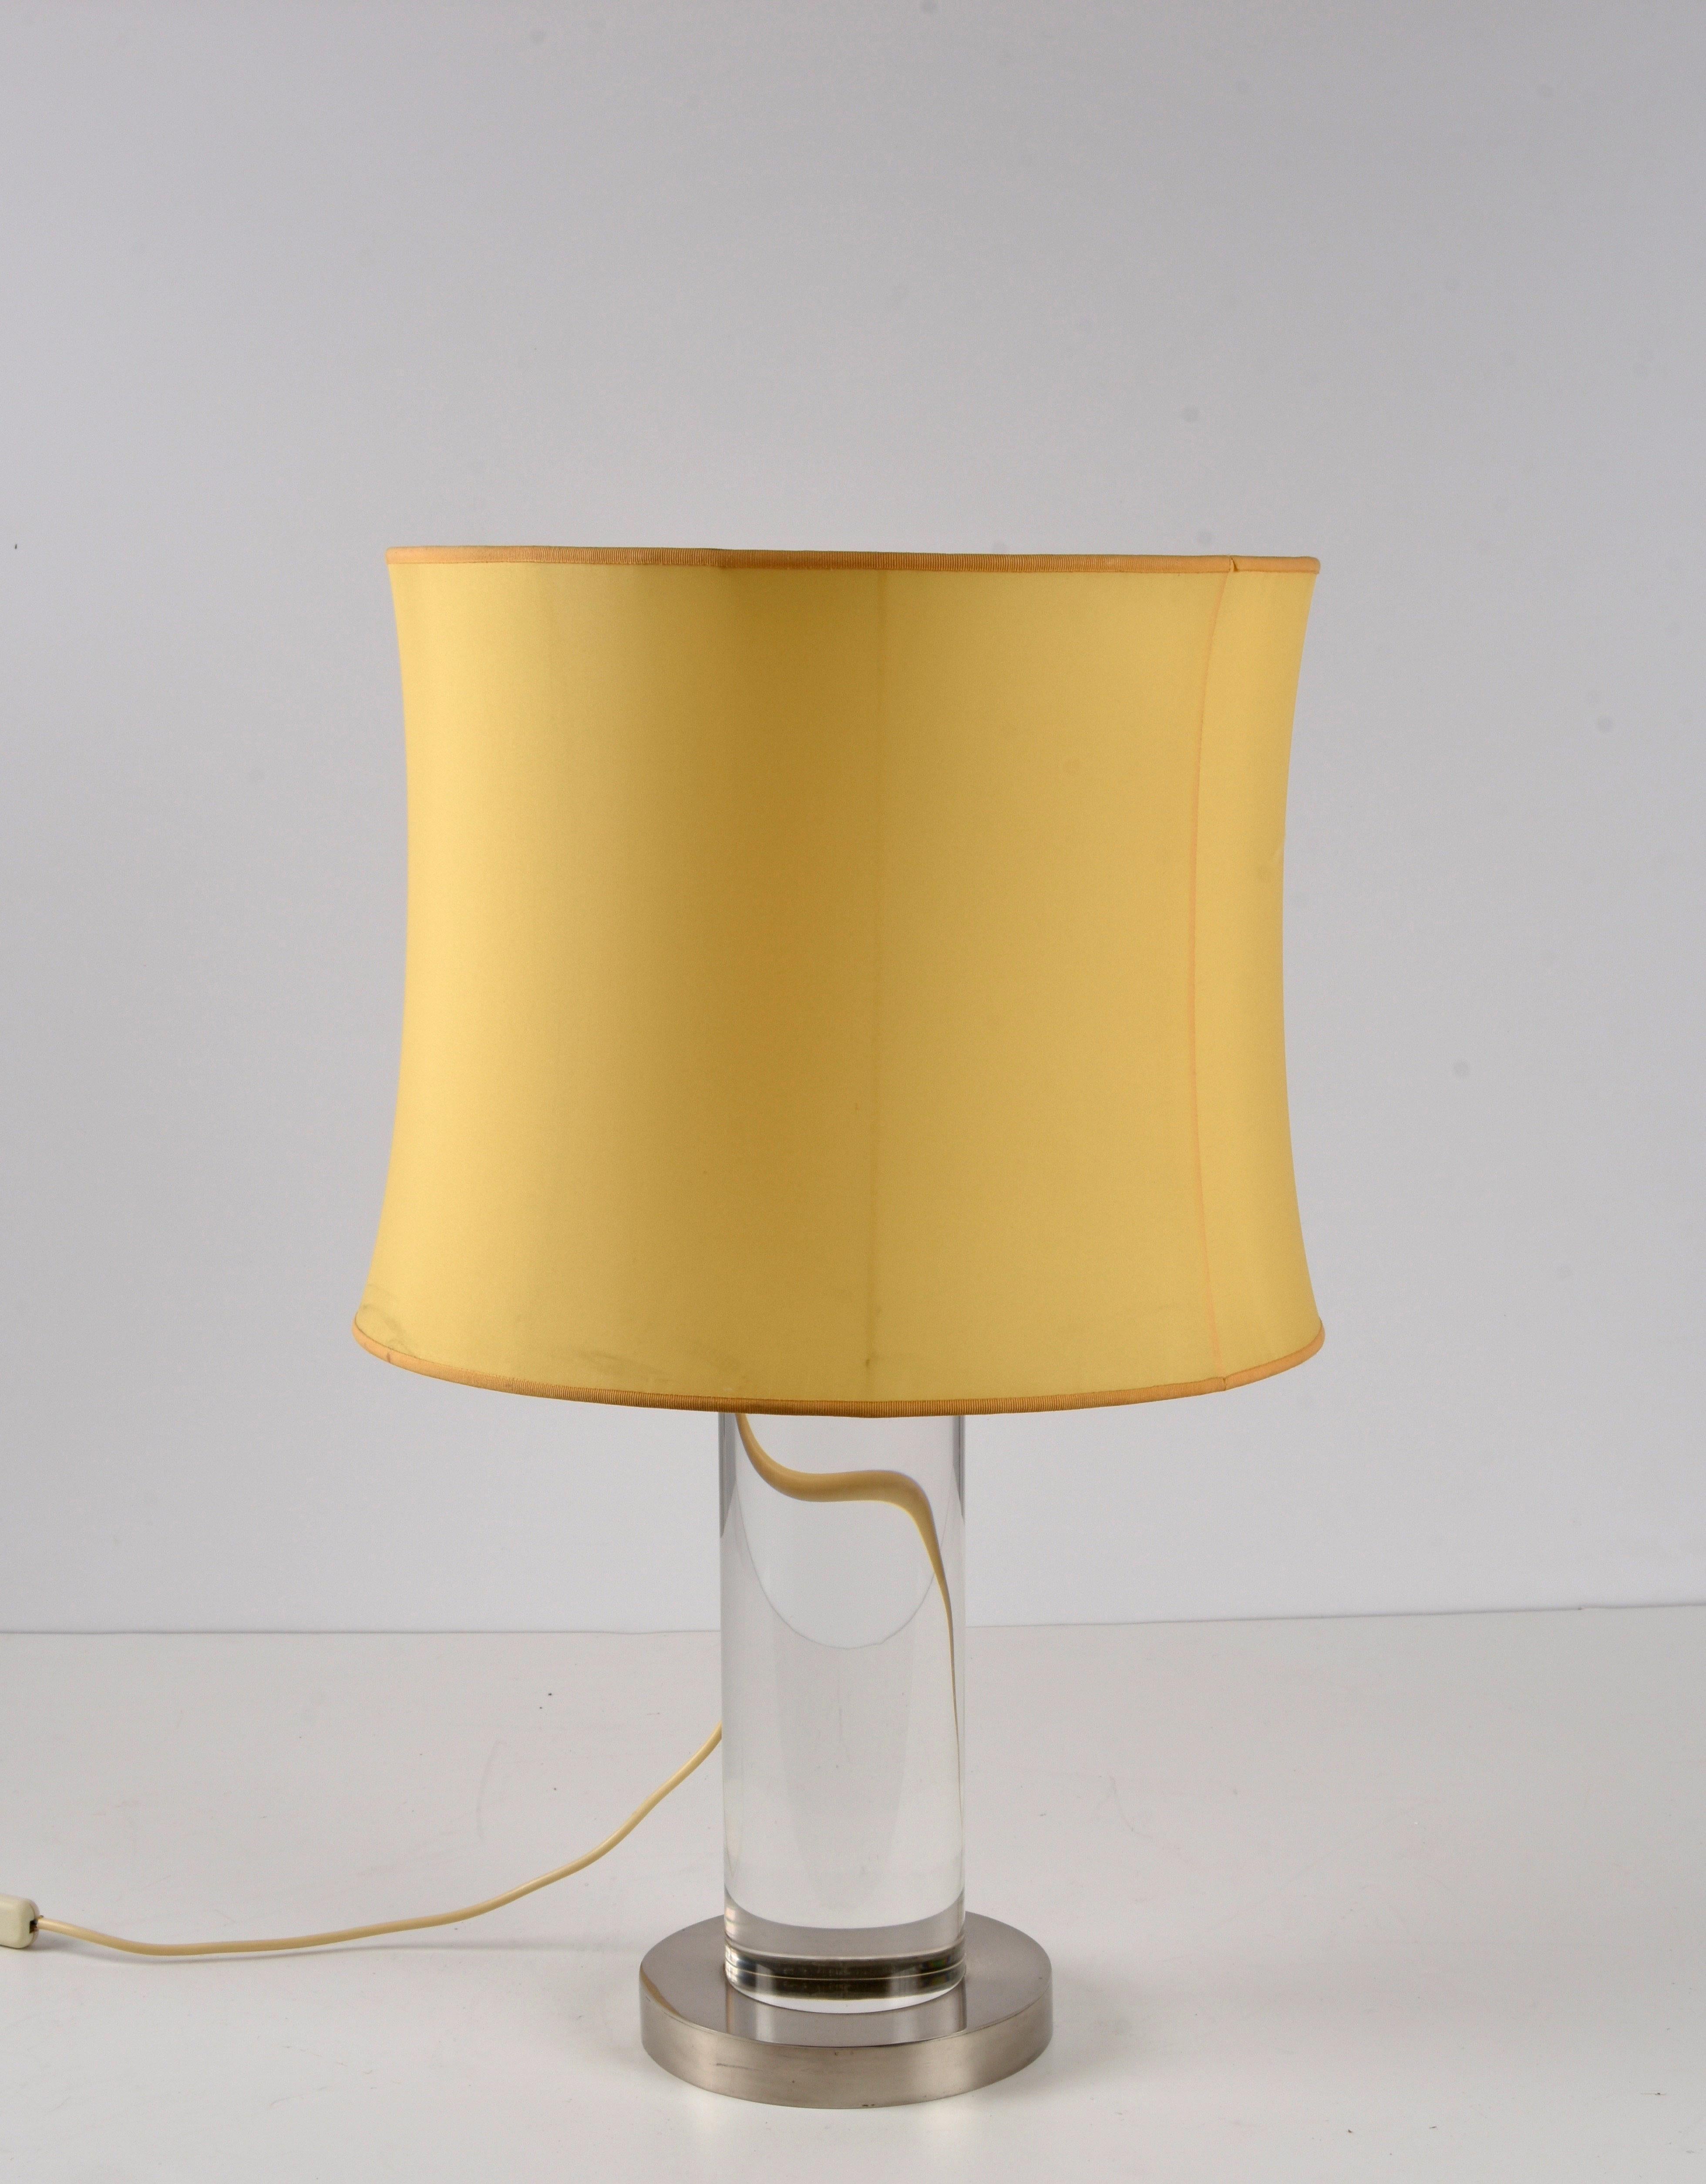 Amazing mid-century Lucite and brass table lamp. Cette pièce fantastique a été conçue par Romeo Rega en Italie dans les années 1970.

La structure cylindrique imaginative de cette lampe, dotée d'une colonne en lucite et d'une base en laiton